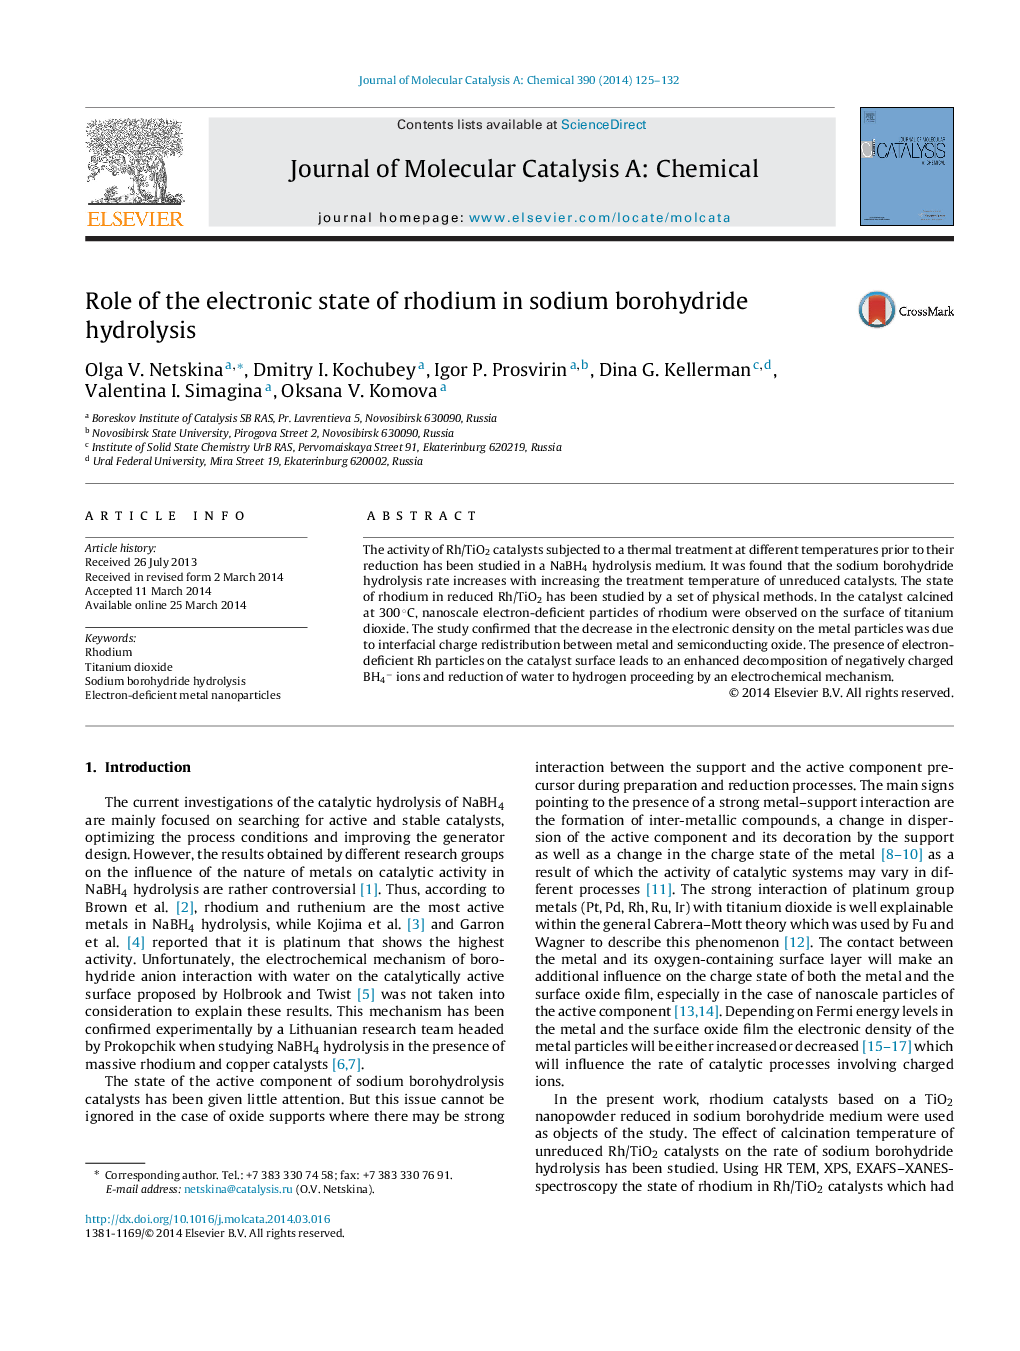 نقش حالت الکترونیکی رادیوم در هیدرولیز بور هیدرید سدیم 